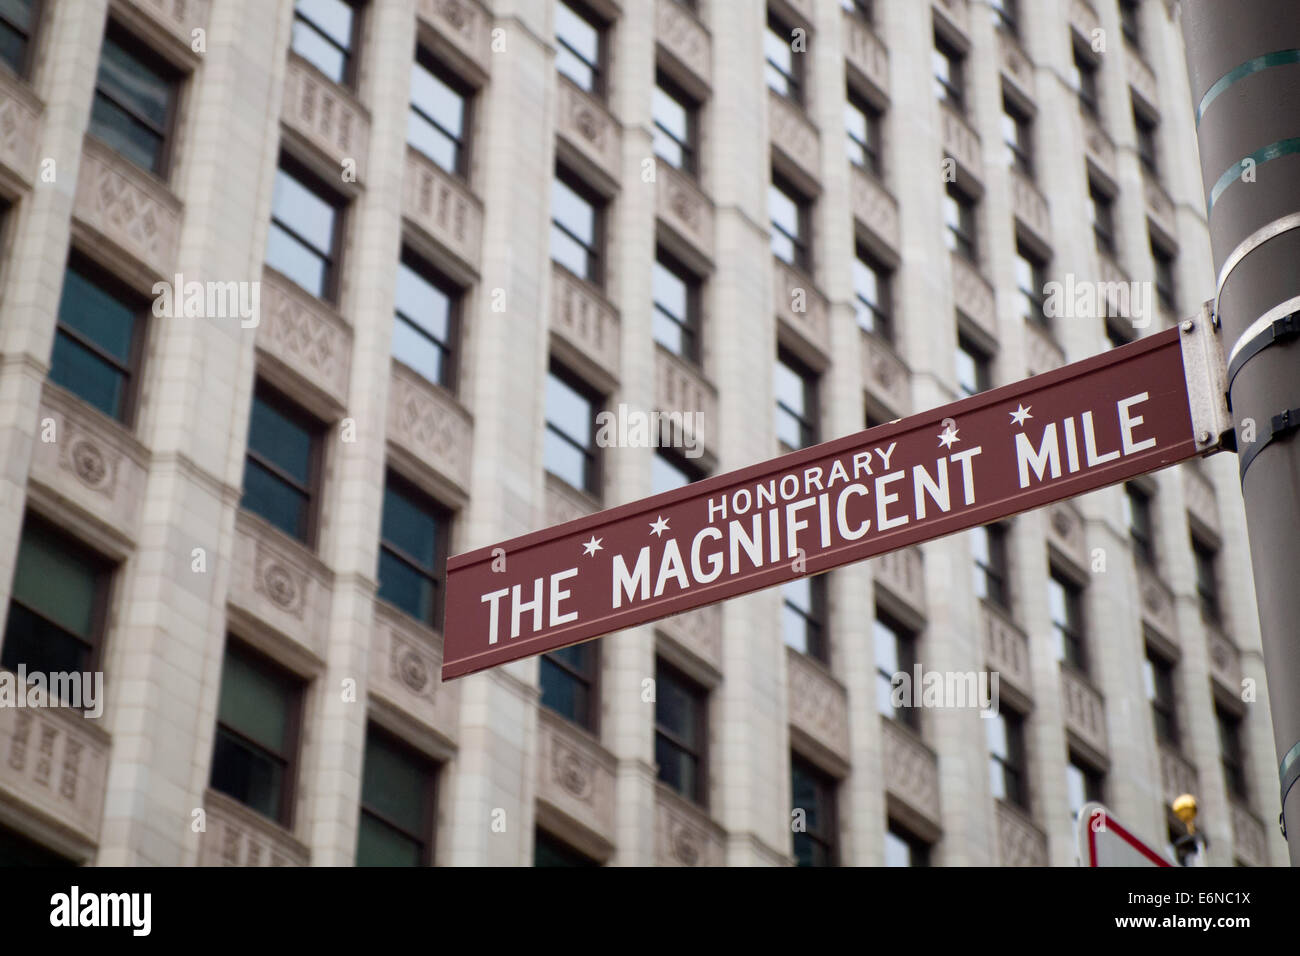 Straßenschild für die Magnificent Mile, auch bekannt als North Michigan Avenue in Chicago, Illinois. Wrigley Building im Hintergrund. Stockfoto